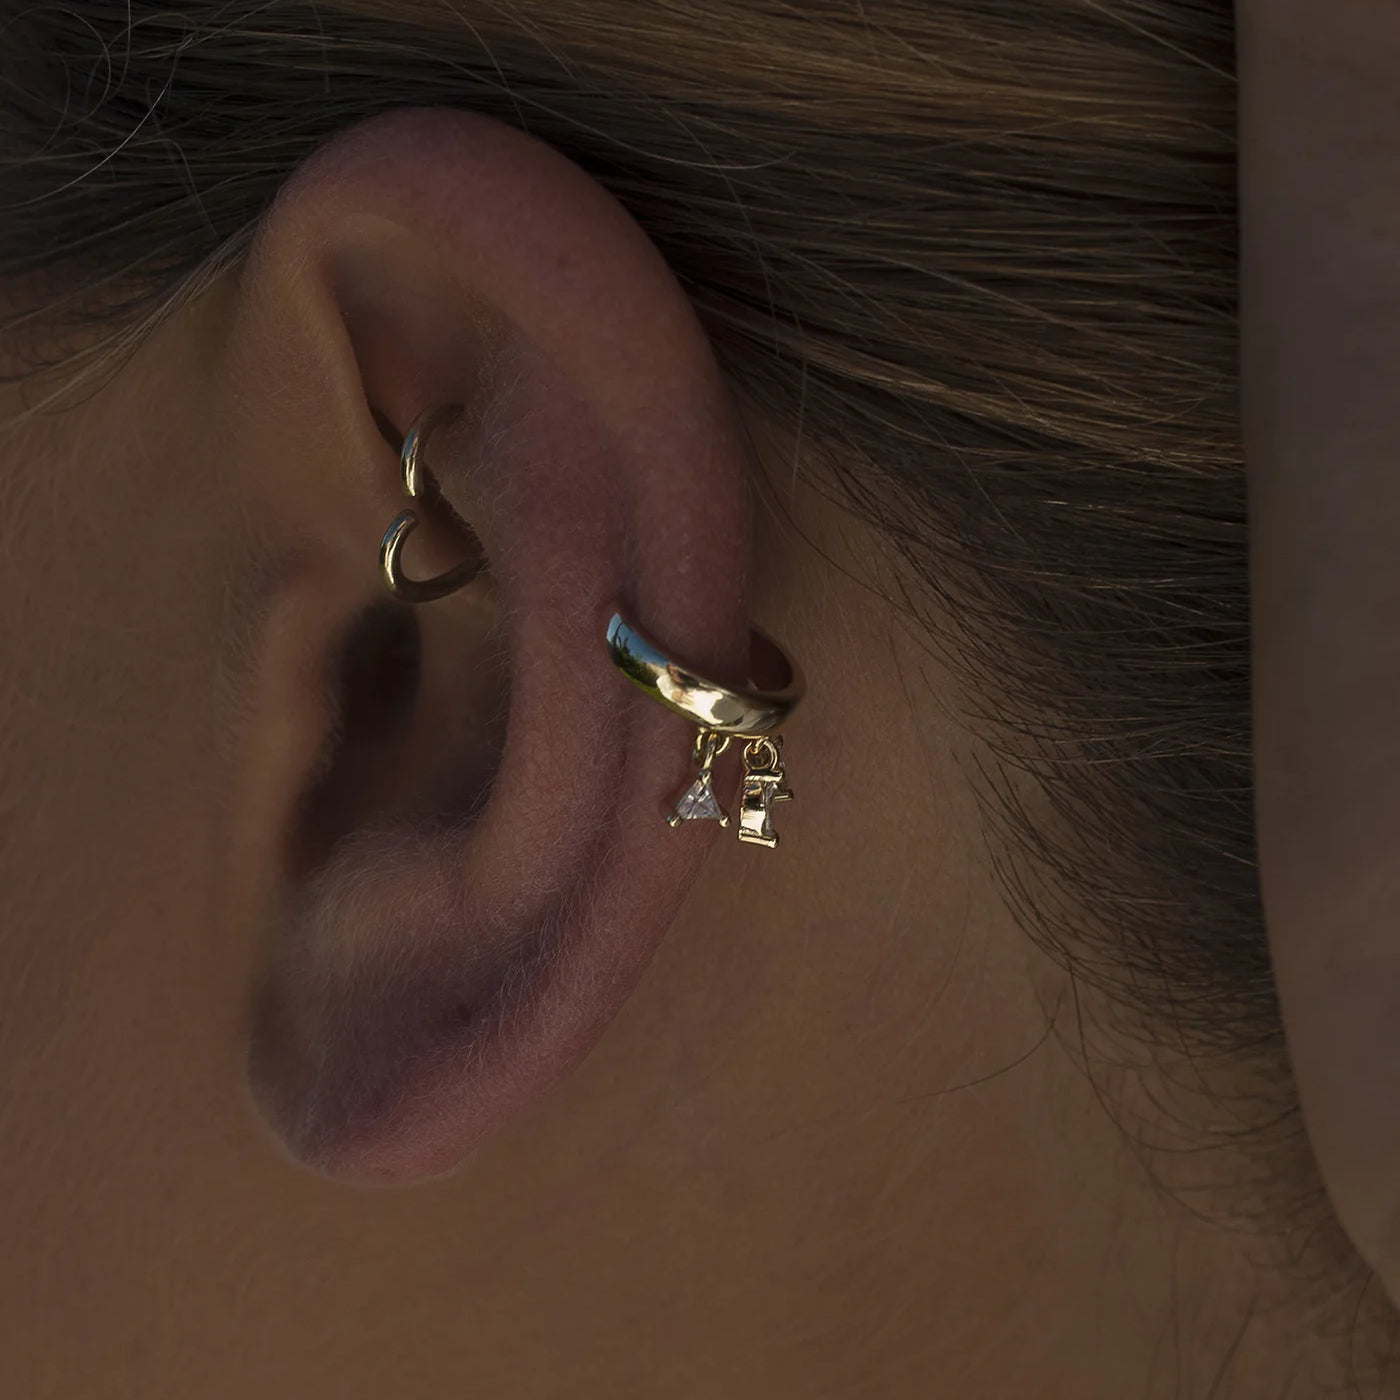 Ear cuff de plata bañada en oro con circonitas colgando